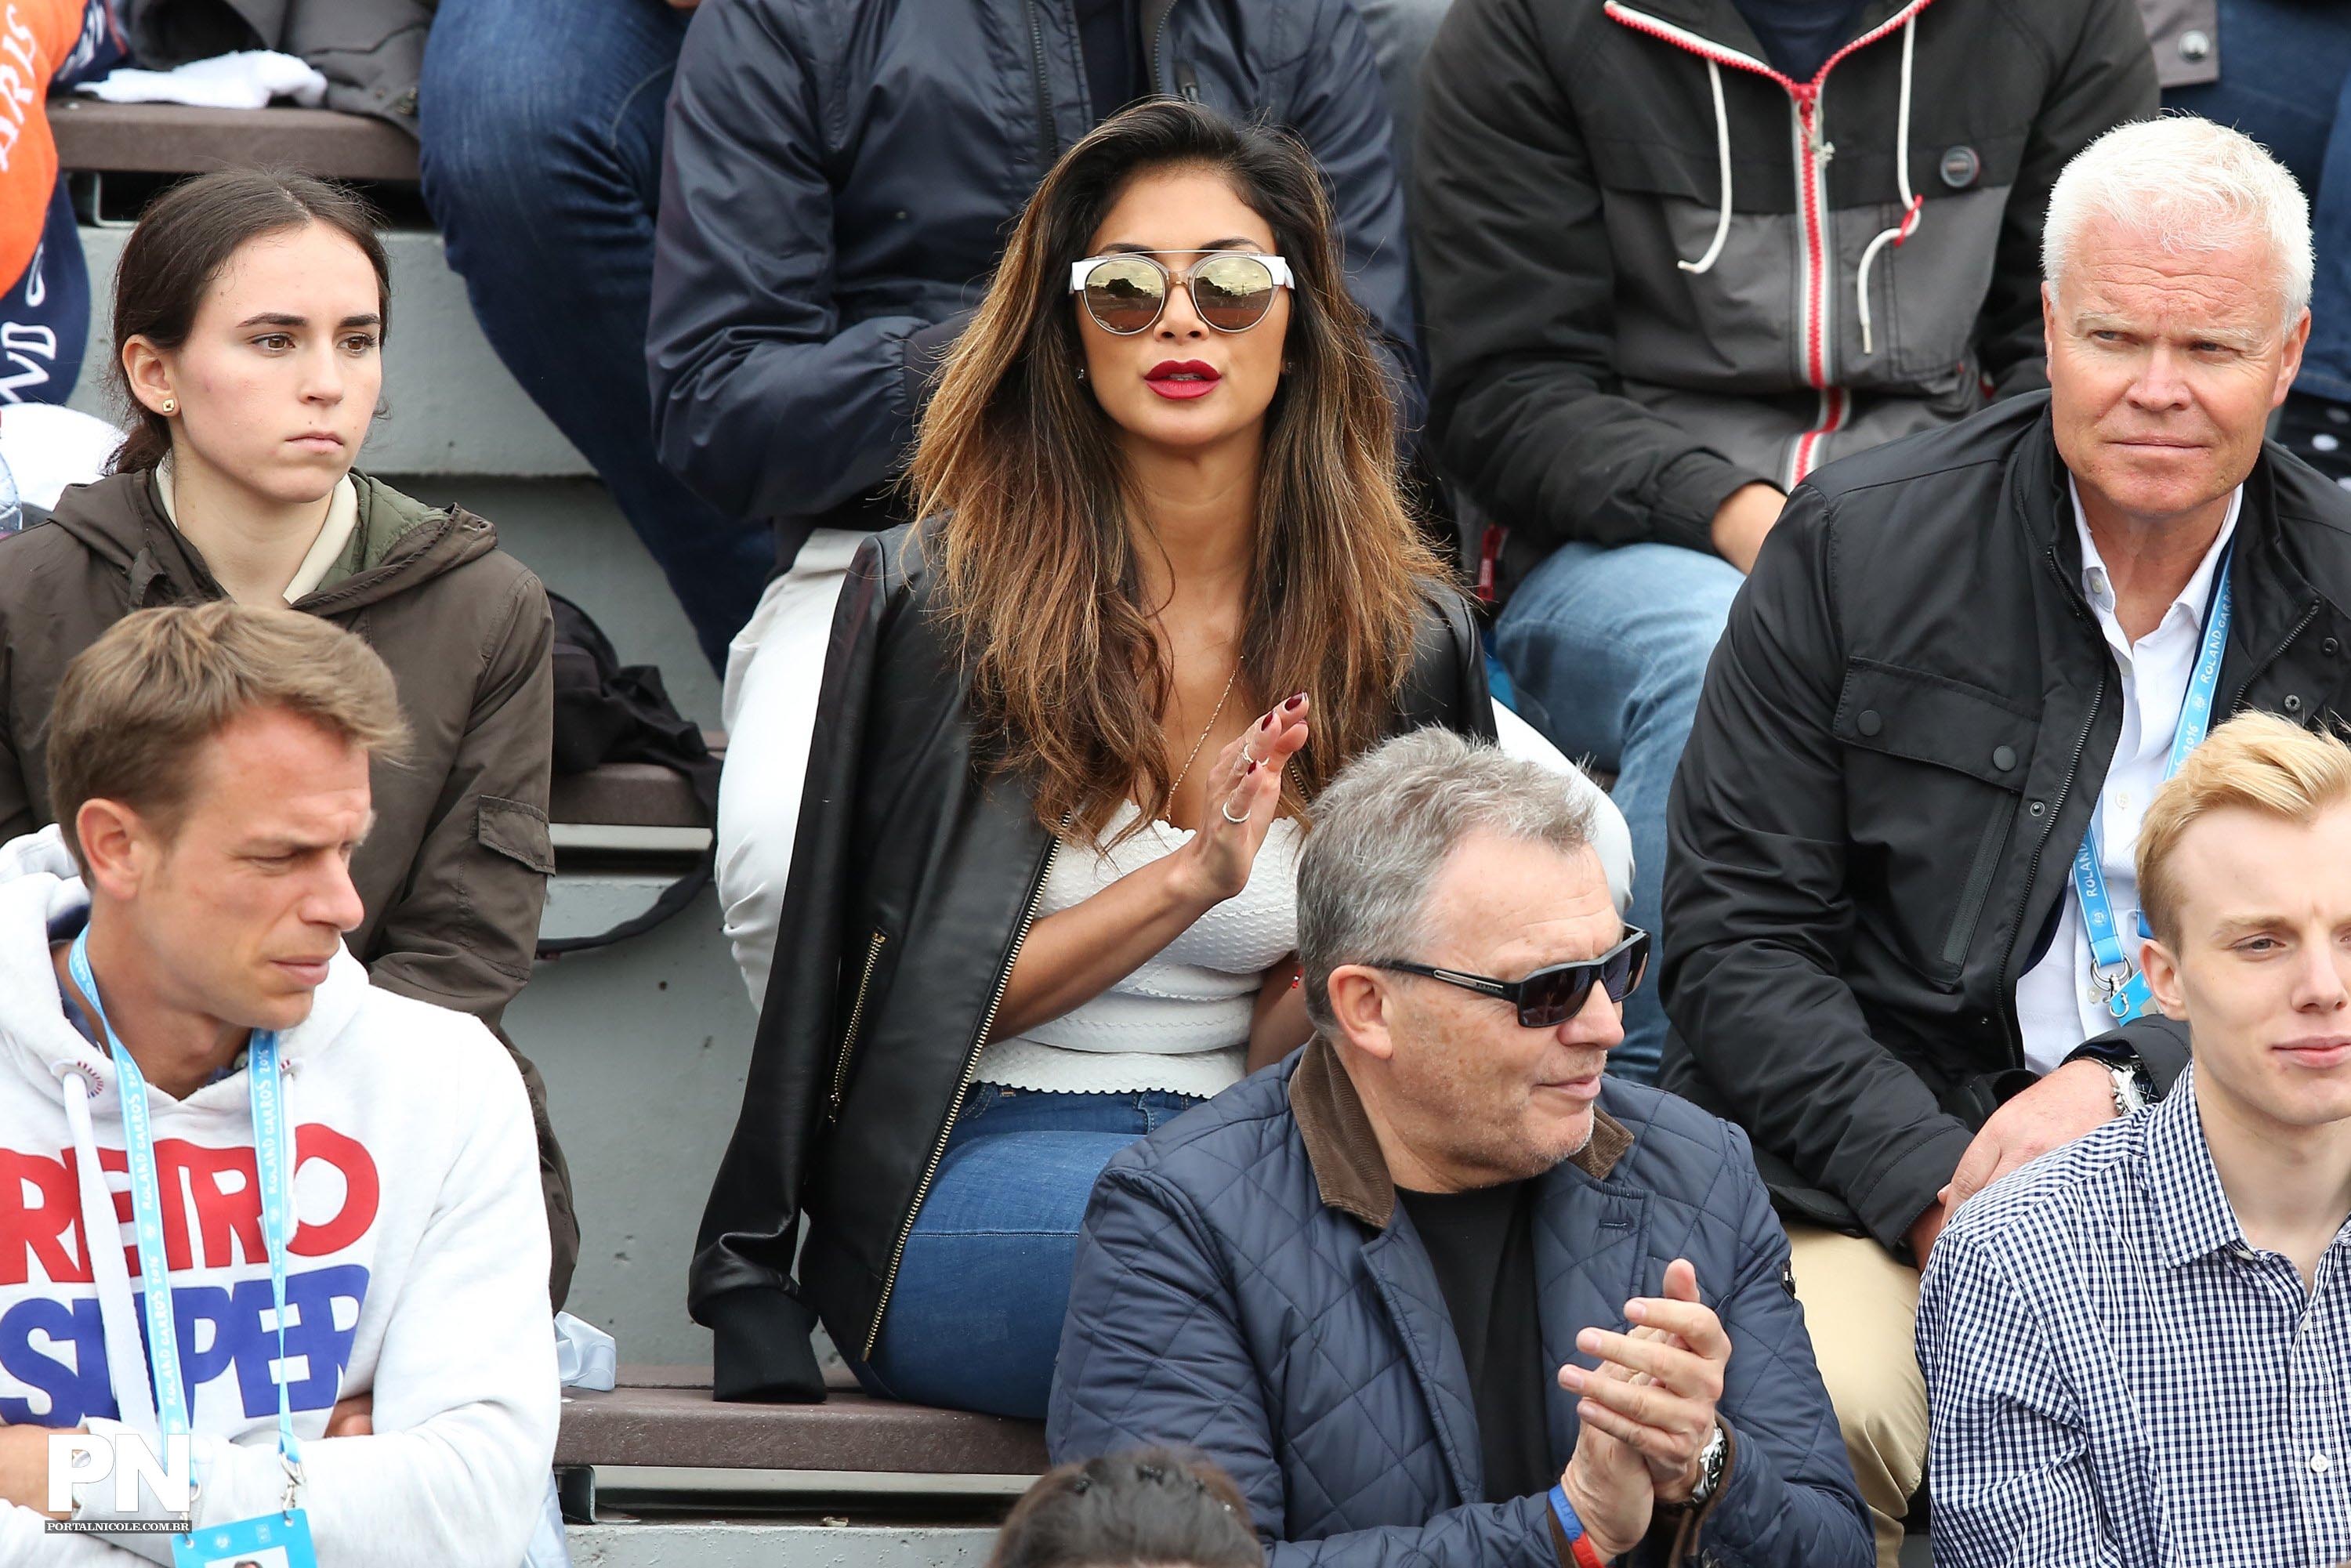 Nicole Scherzinger watching a tenis game